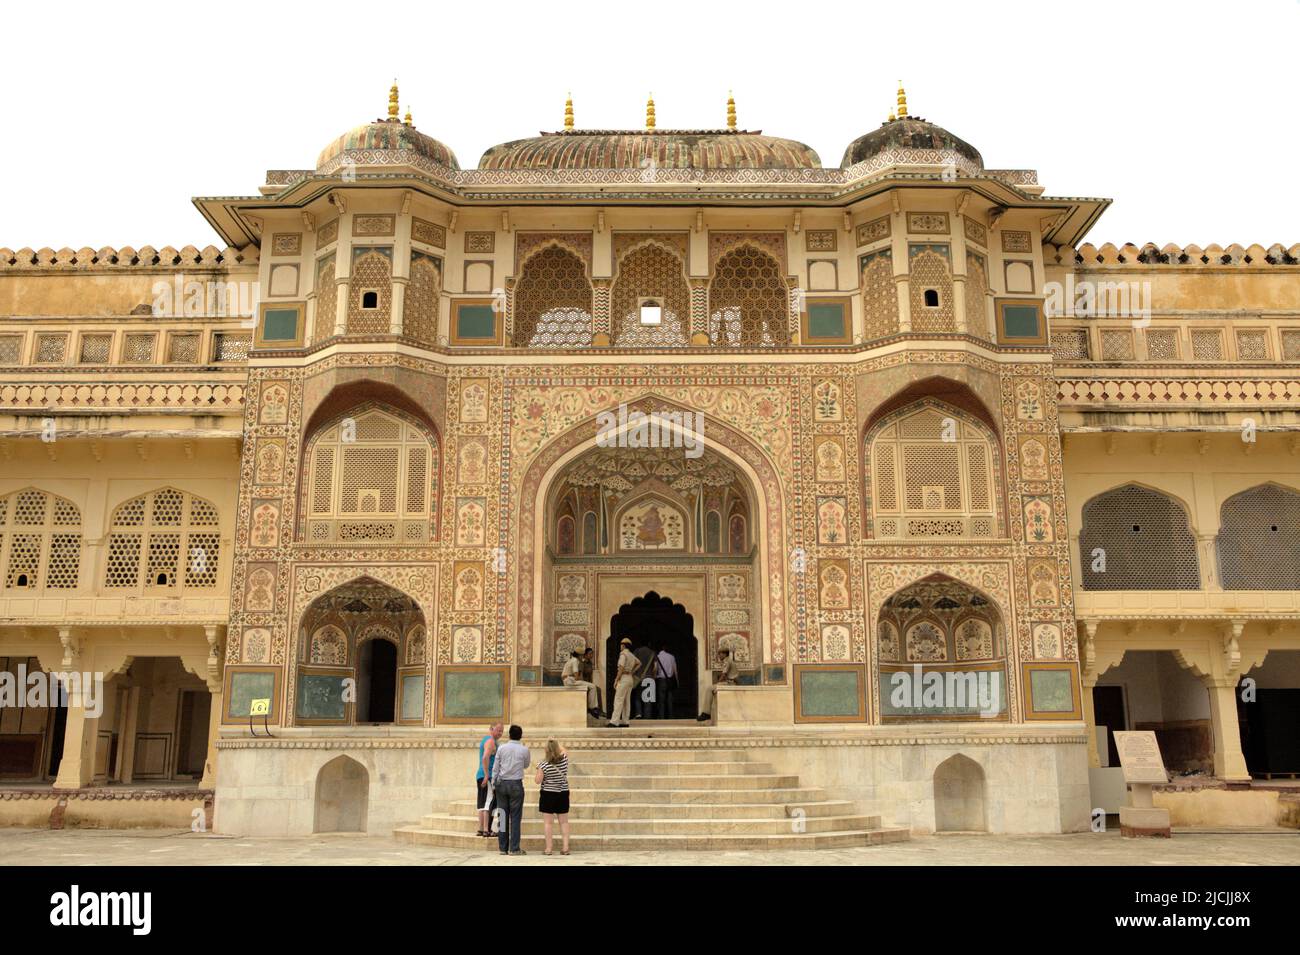 Fachada de la entrada Ganesh Pol en estilo arquitectónico Rajput, con una sección superior con ventanas donde las señoras de la familia real solían ver eventos en Amer Fort en Amer, Rajasthan, India. Foto de stock